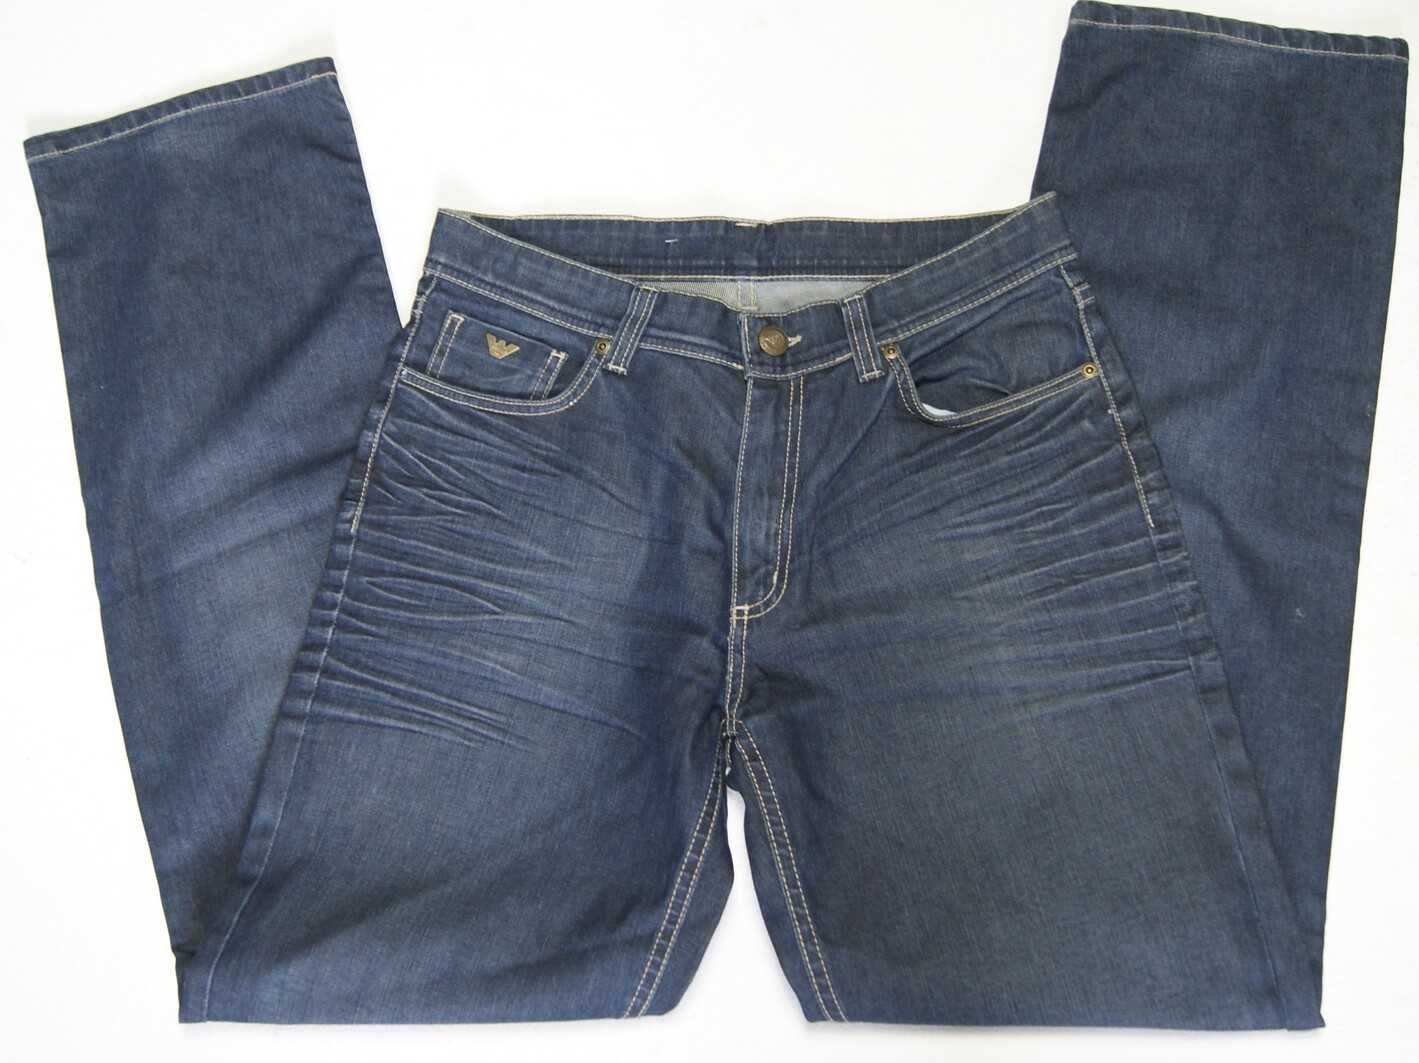 JACKY-O by Modarelli W32 L34 pas 82 jeansy męskie jak nowe proste